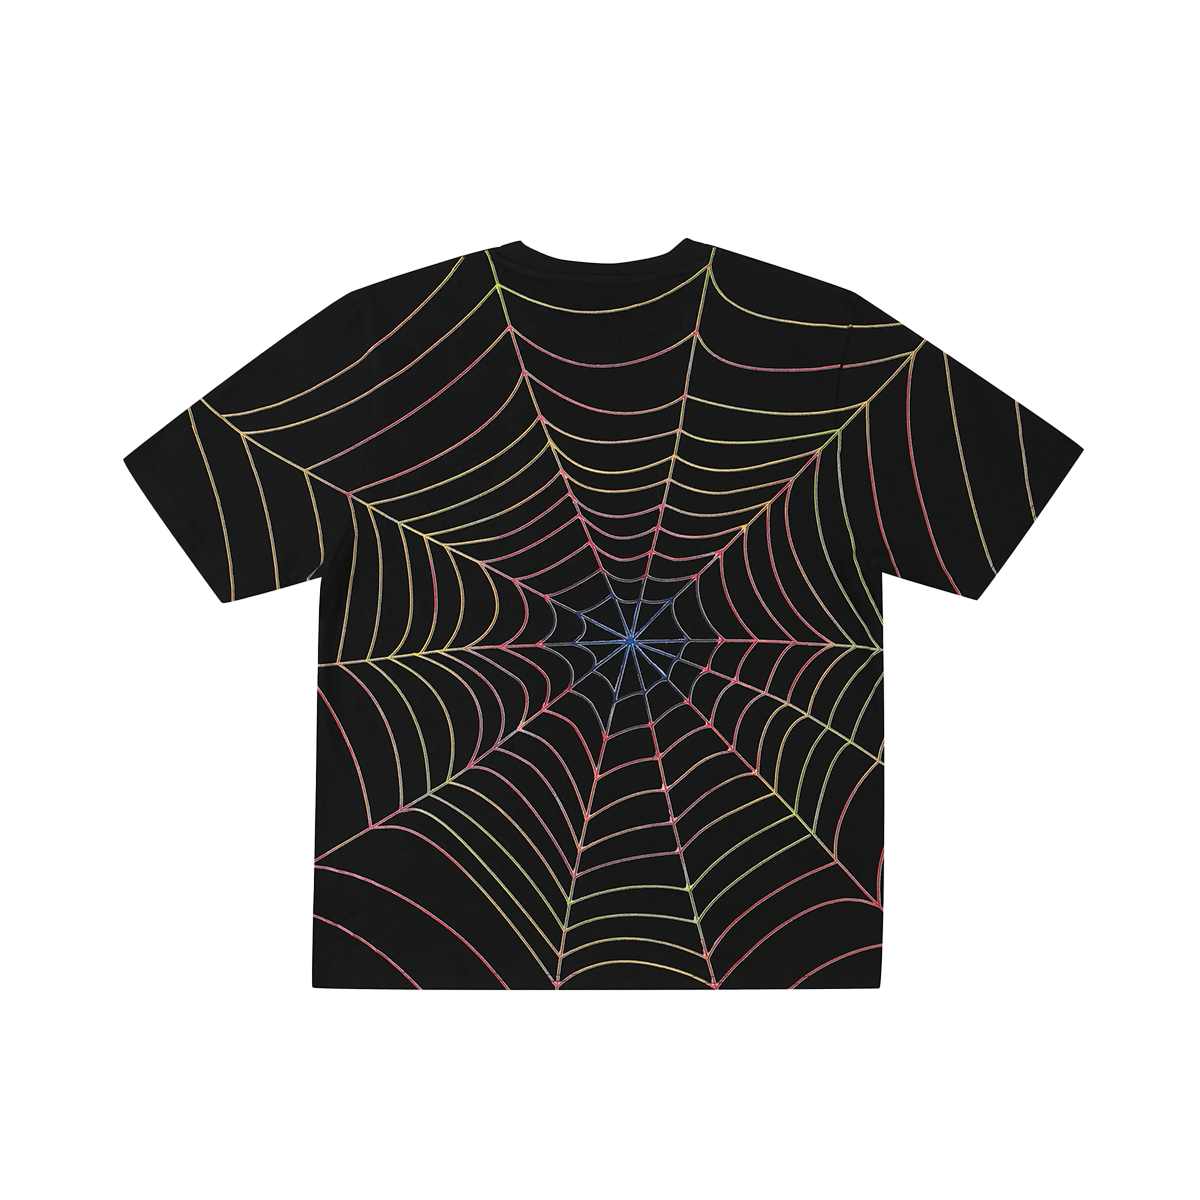 Yardsale Spider T-Shirt - Black